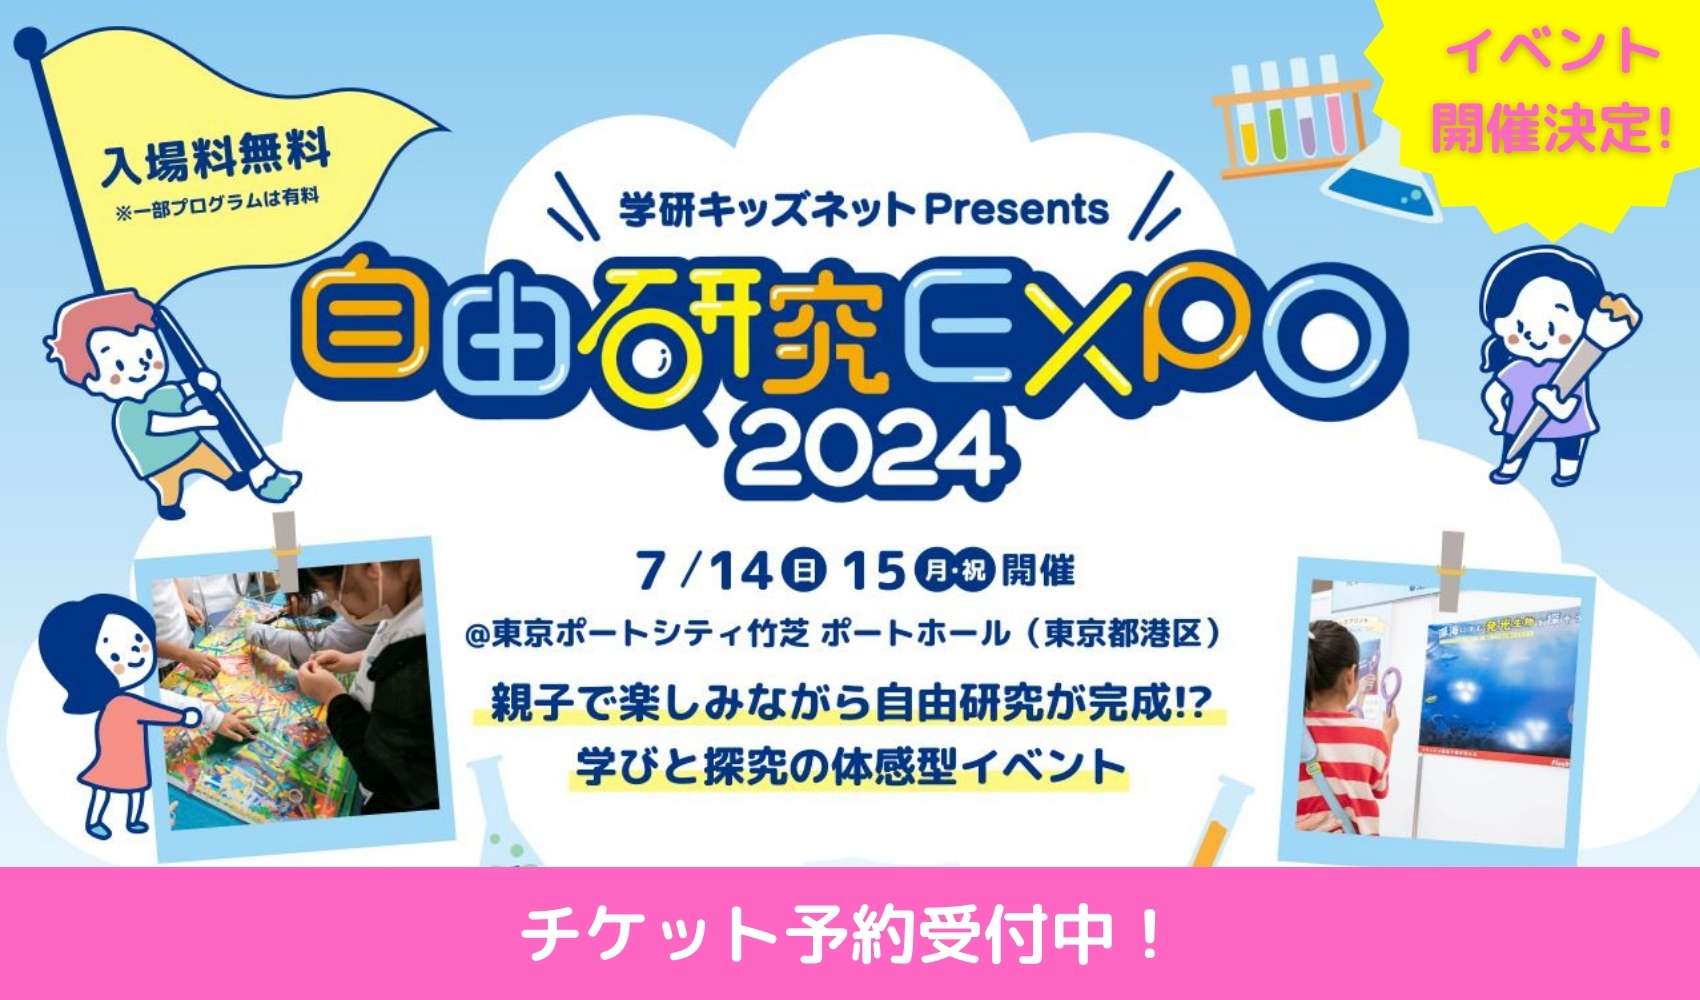 自由研究EXPO2024